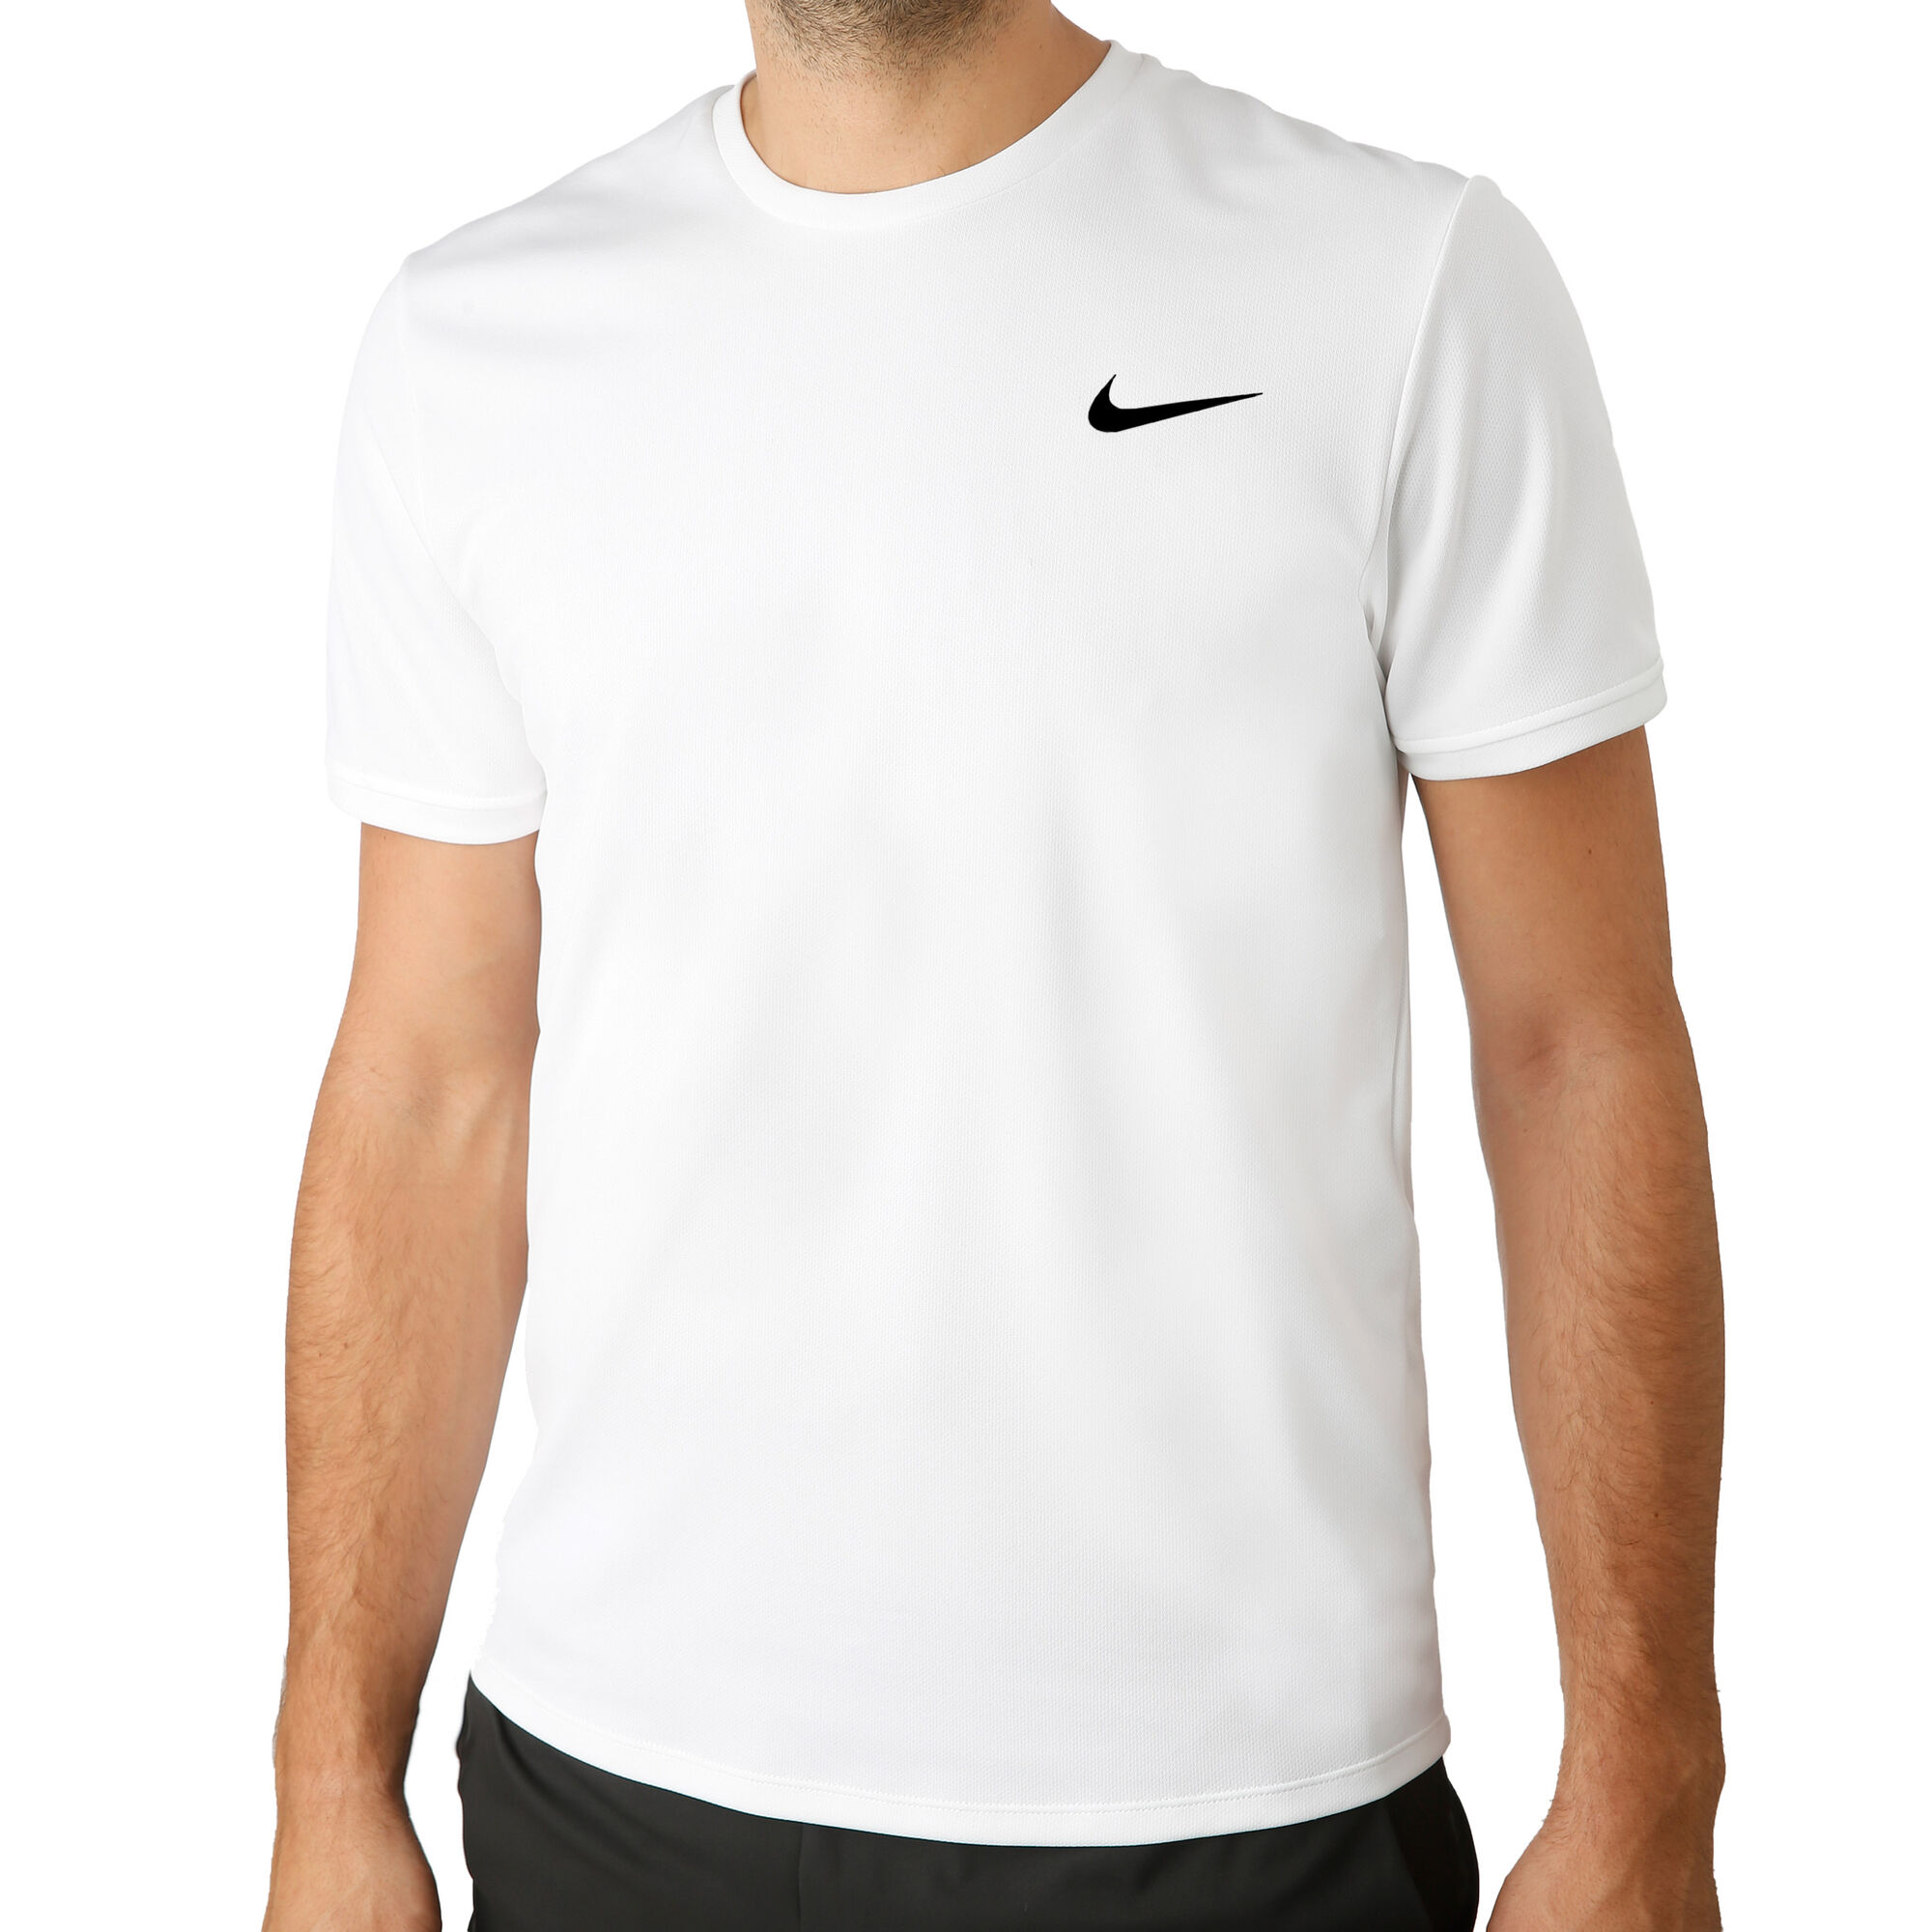 buy Nike Court Dry Colourblocked T-Shirt Men - White, Black online ...